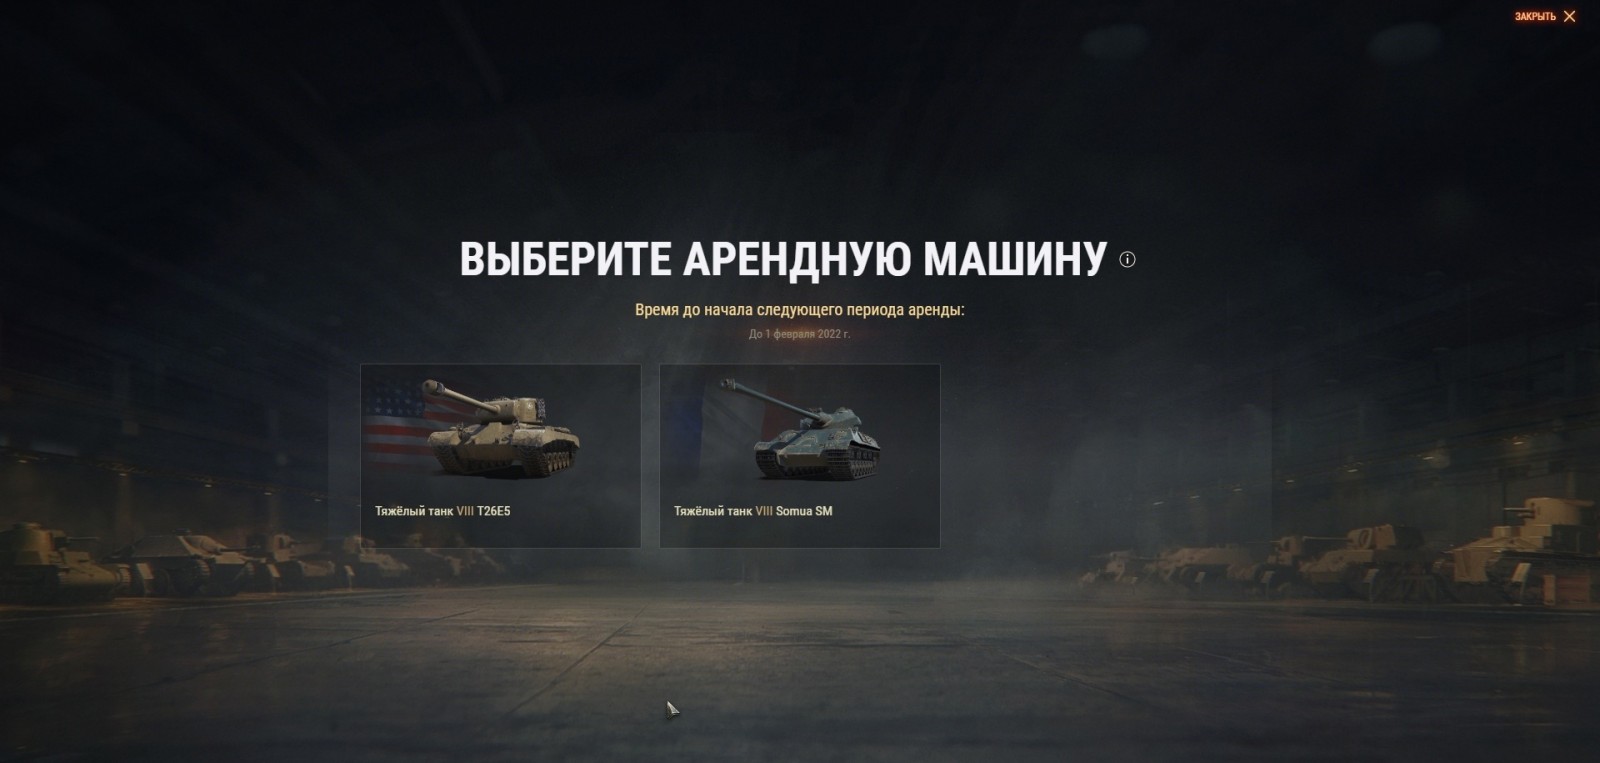 Арендные танки для пользователей тарифа «Игровой» на месяц Январь 2022